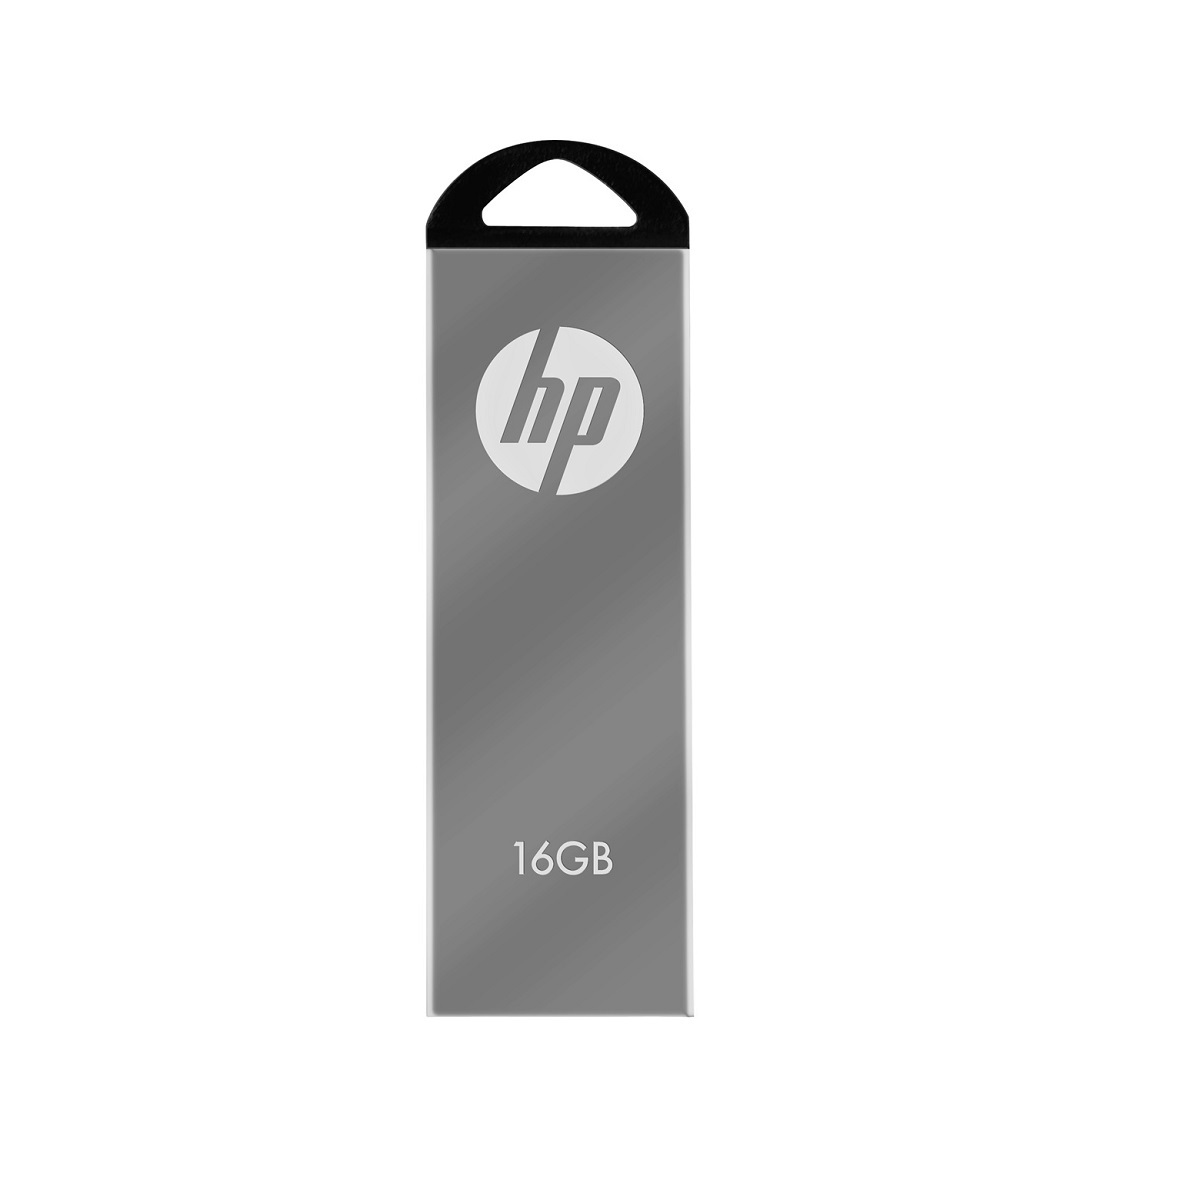 Thẻ nhớ USB HP V220W - 16GB, USB 2.0